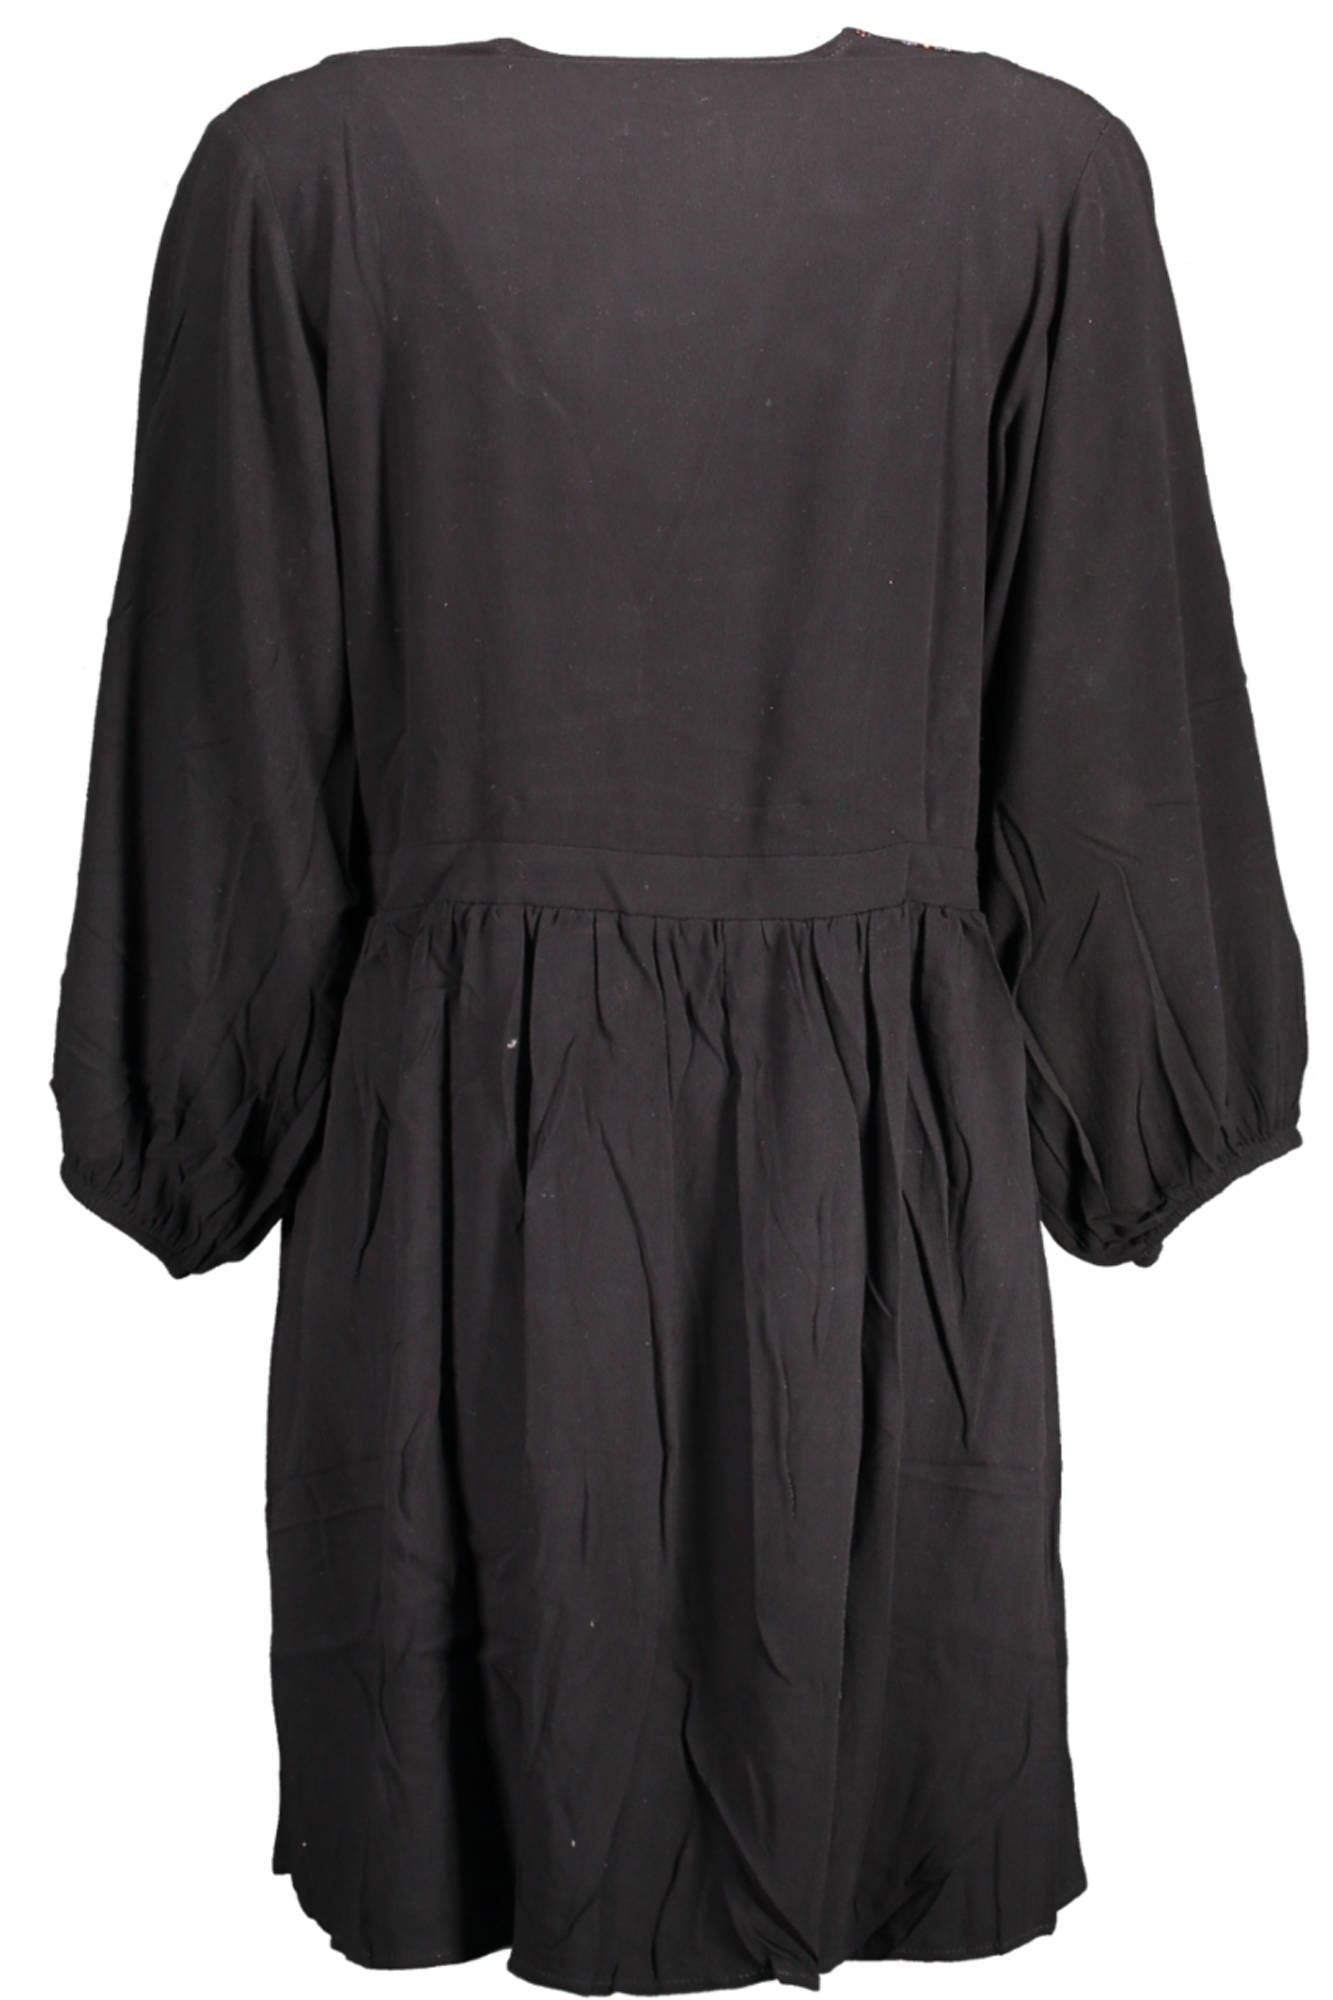 Desigual – Elegantes schwarzes Viskosekleid mit kontrastierenden Details